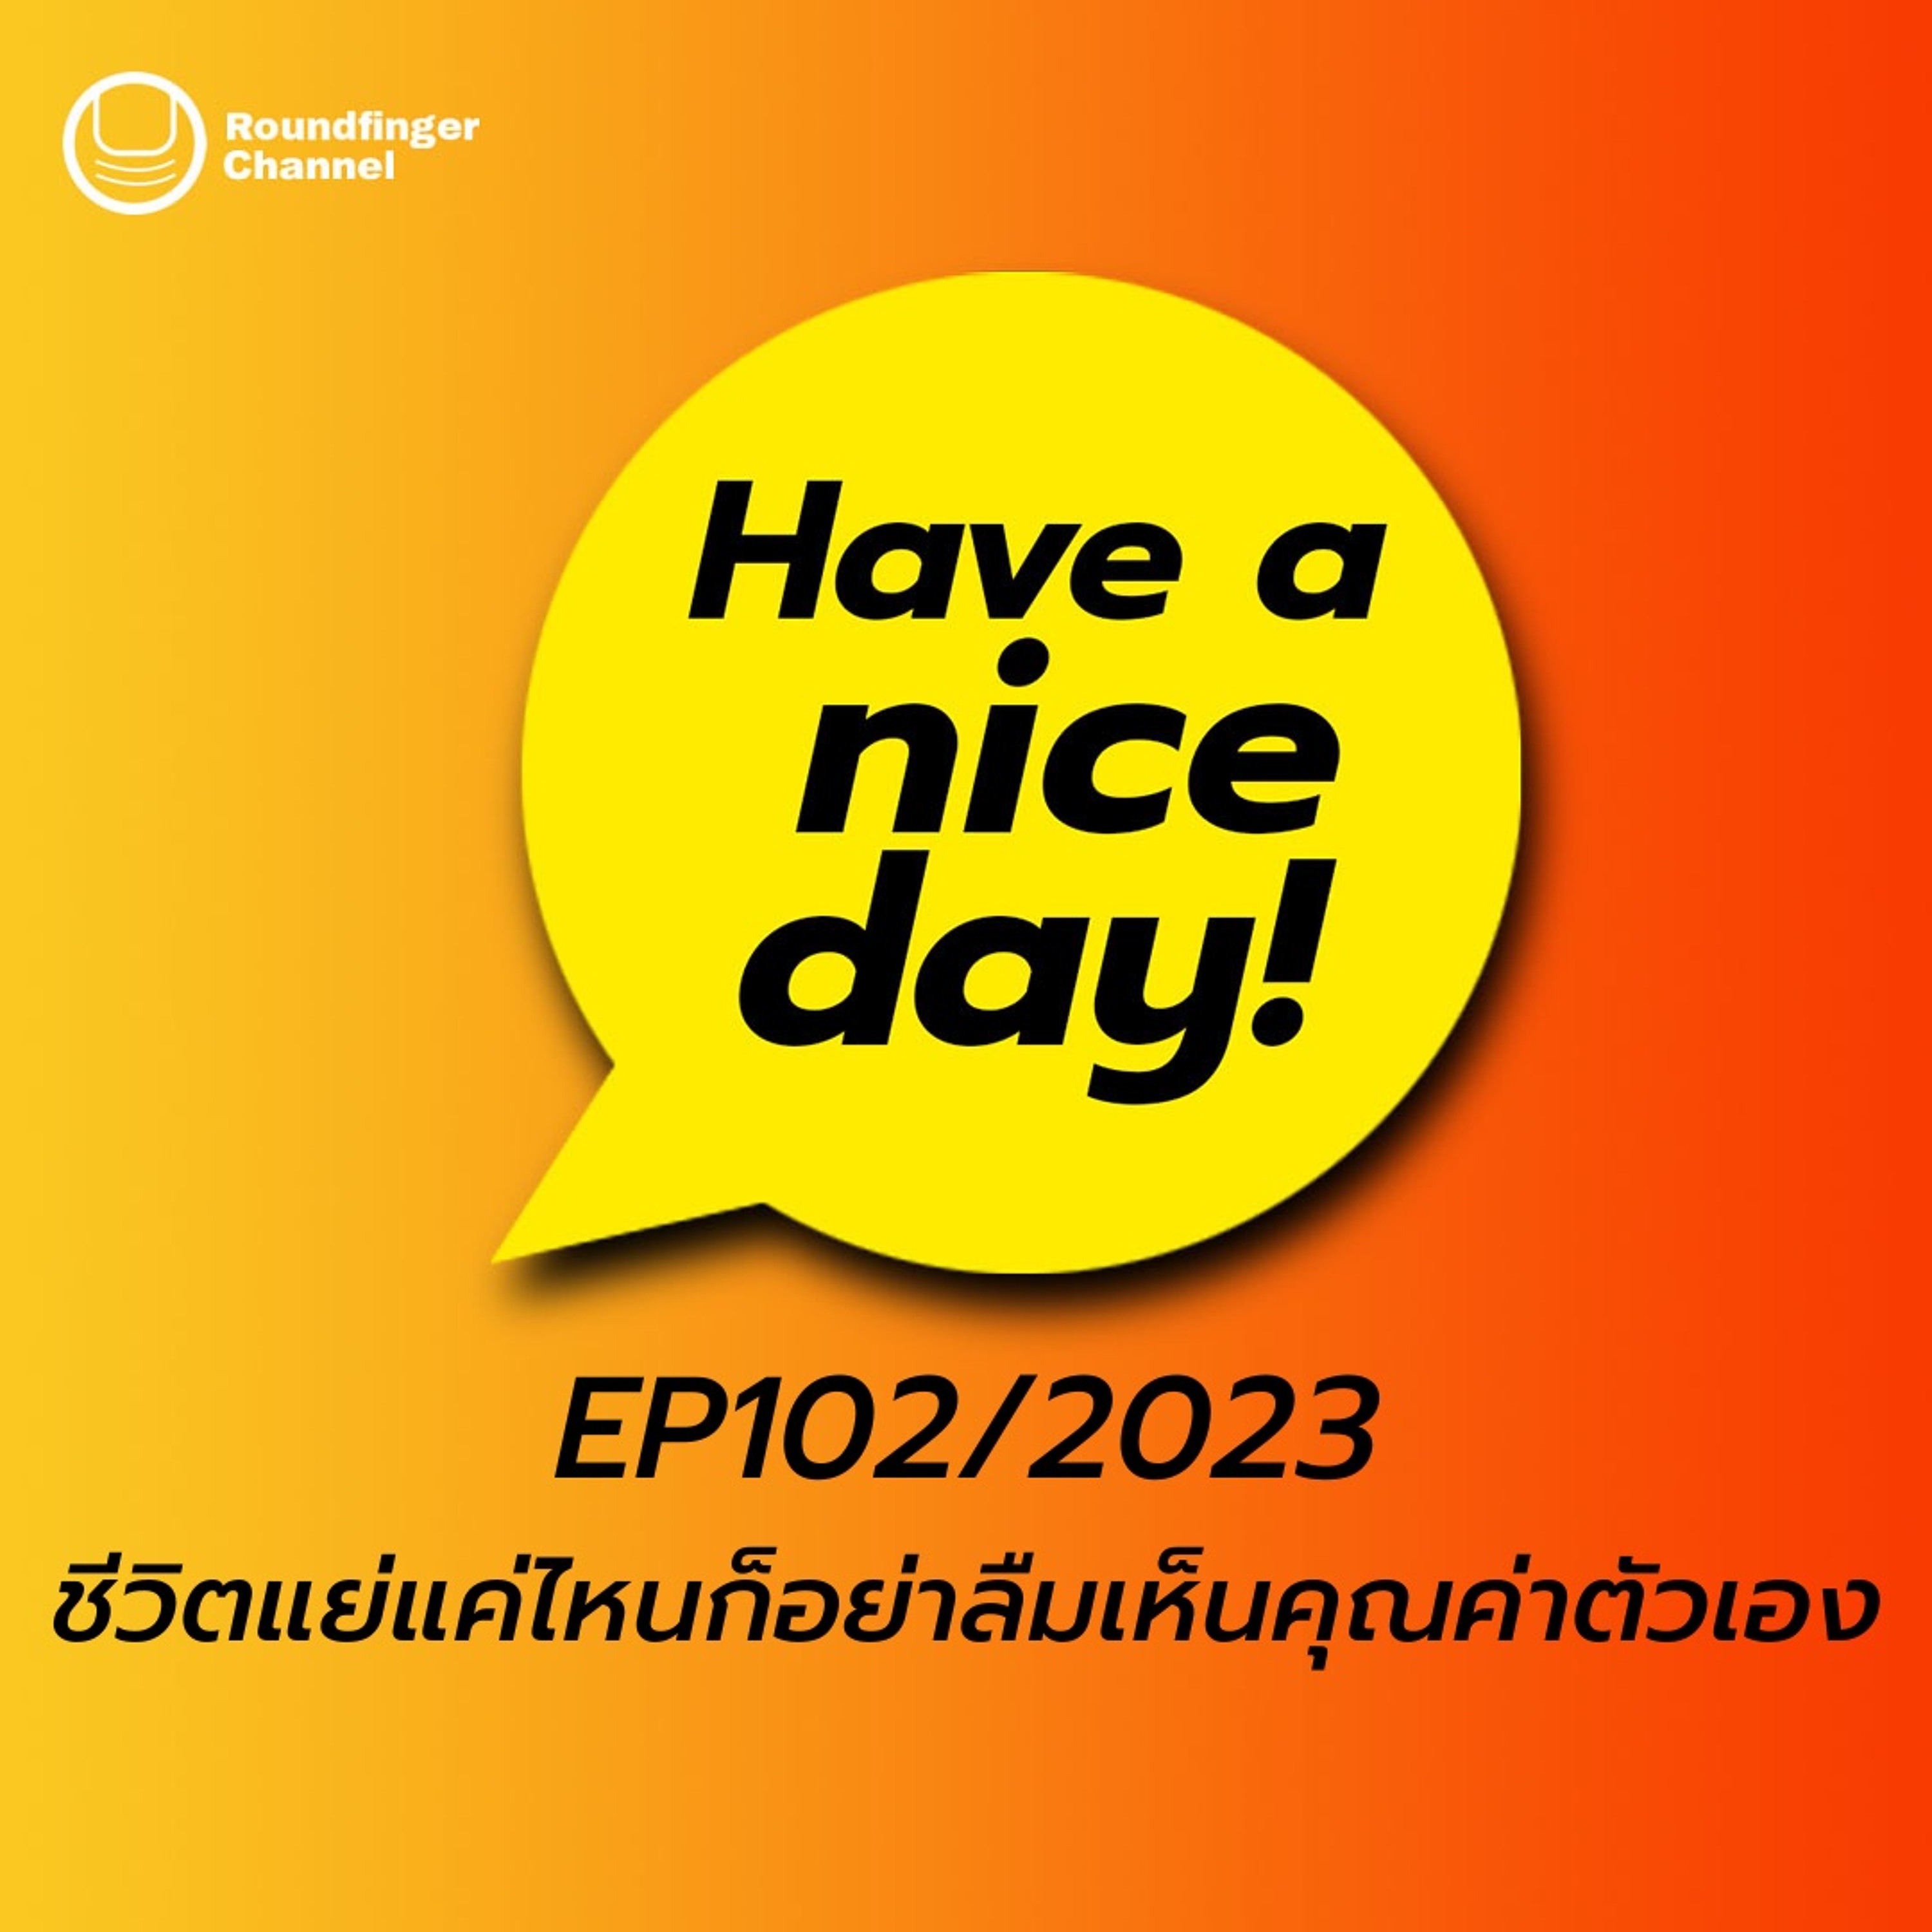 ชีวิตแย่แค่ไหนก็อย่าลืมเห็นคุณค่าตัวเอง | Have A Nice Day! EP102/2023